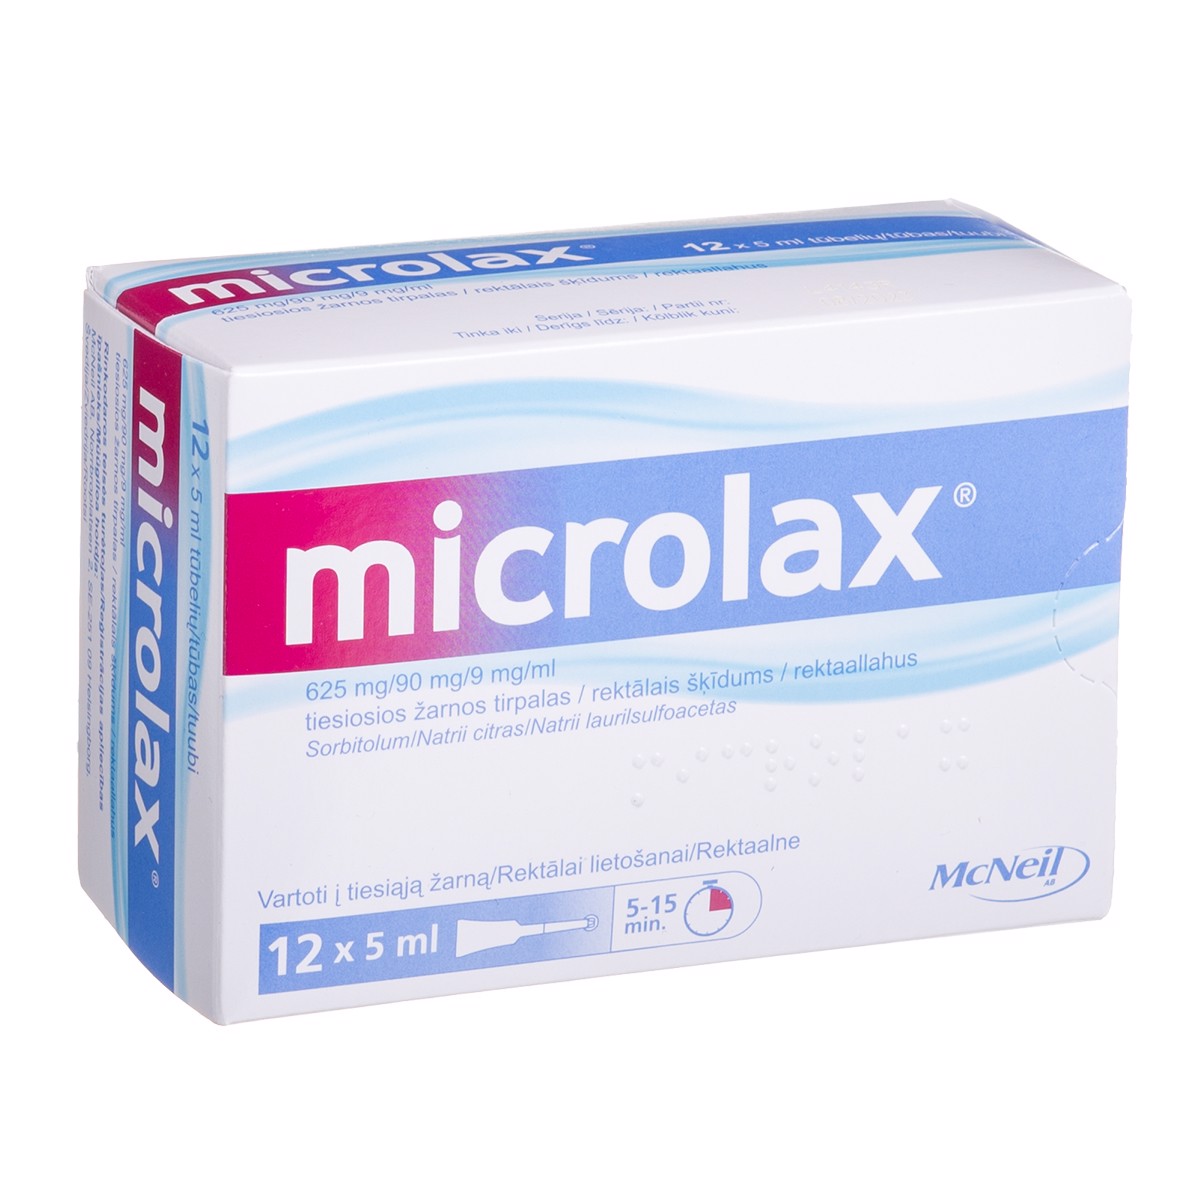 MICROLAX, 625 mg/90 mg/9 mg/ml, tiesiosios žarnos tirpalas, 5 ml, N12